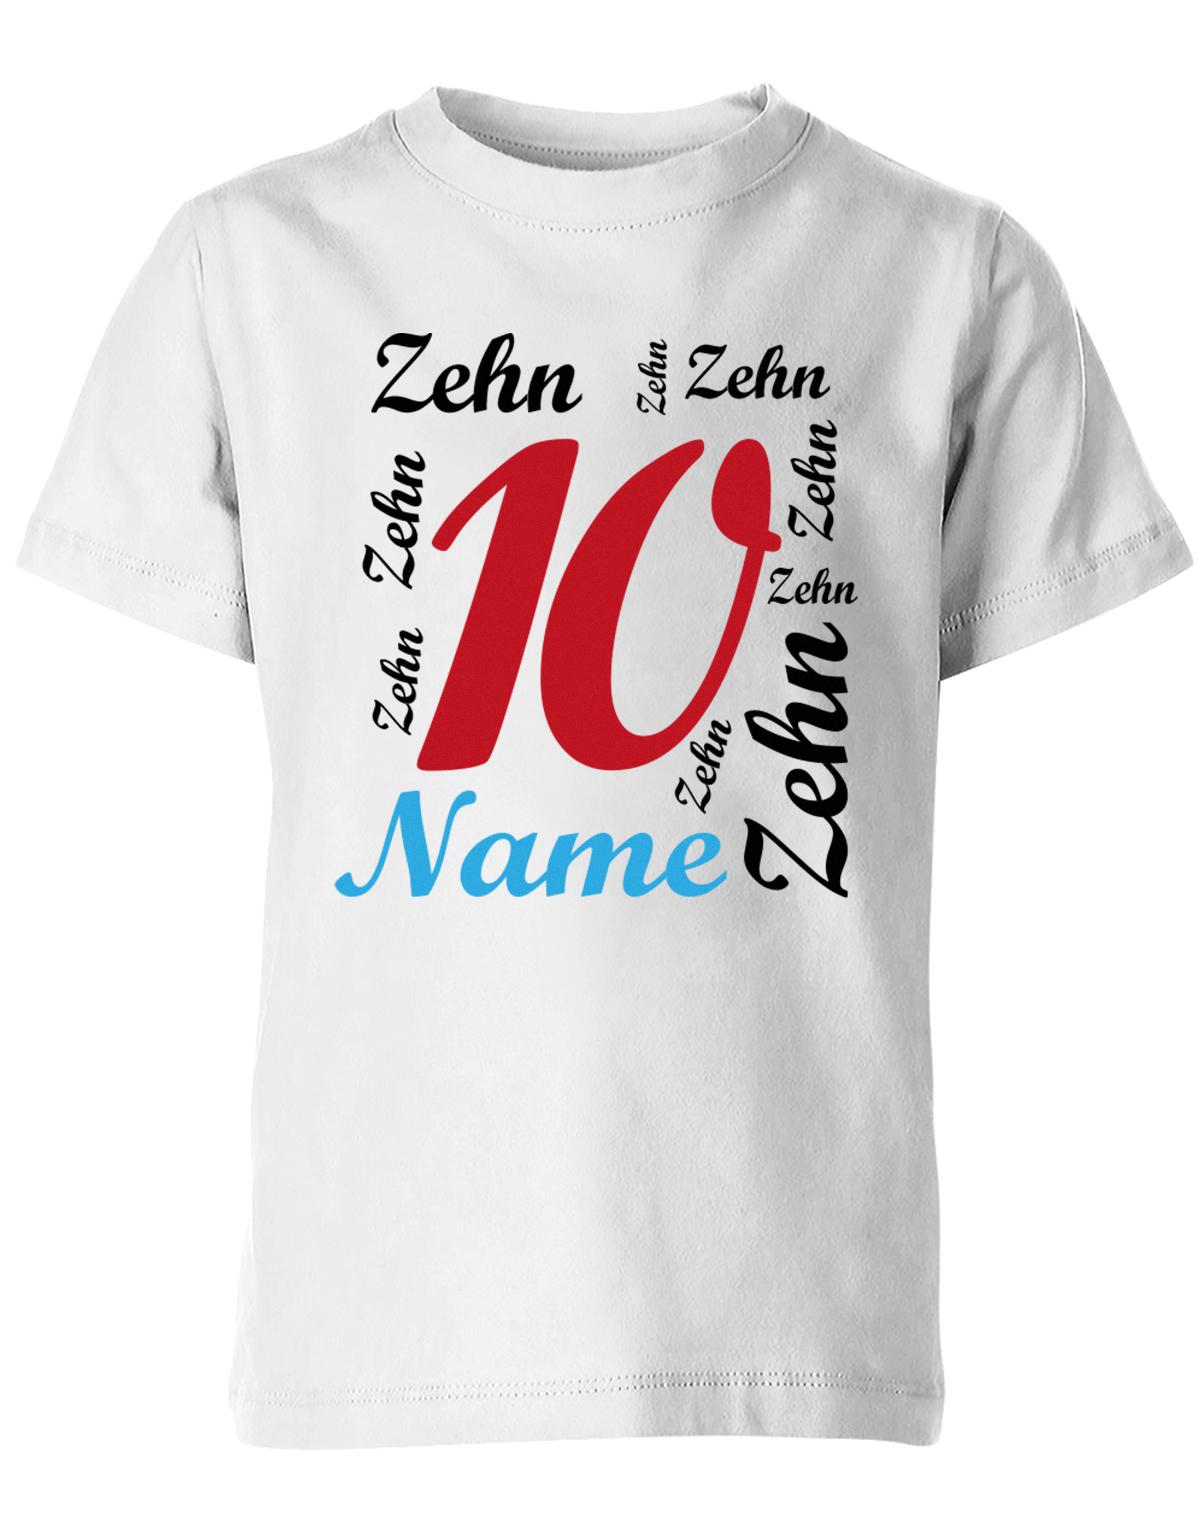 ich-bin-10-viele-zehnen-mit-name-geburtstag-kinder-shirt-weiss